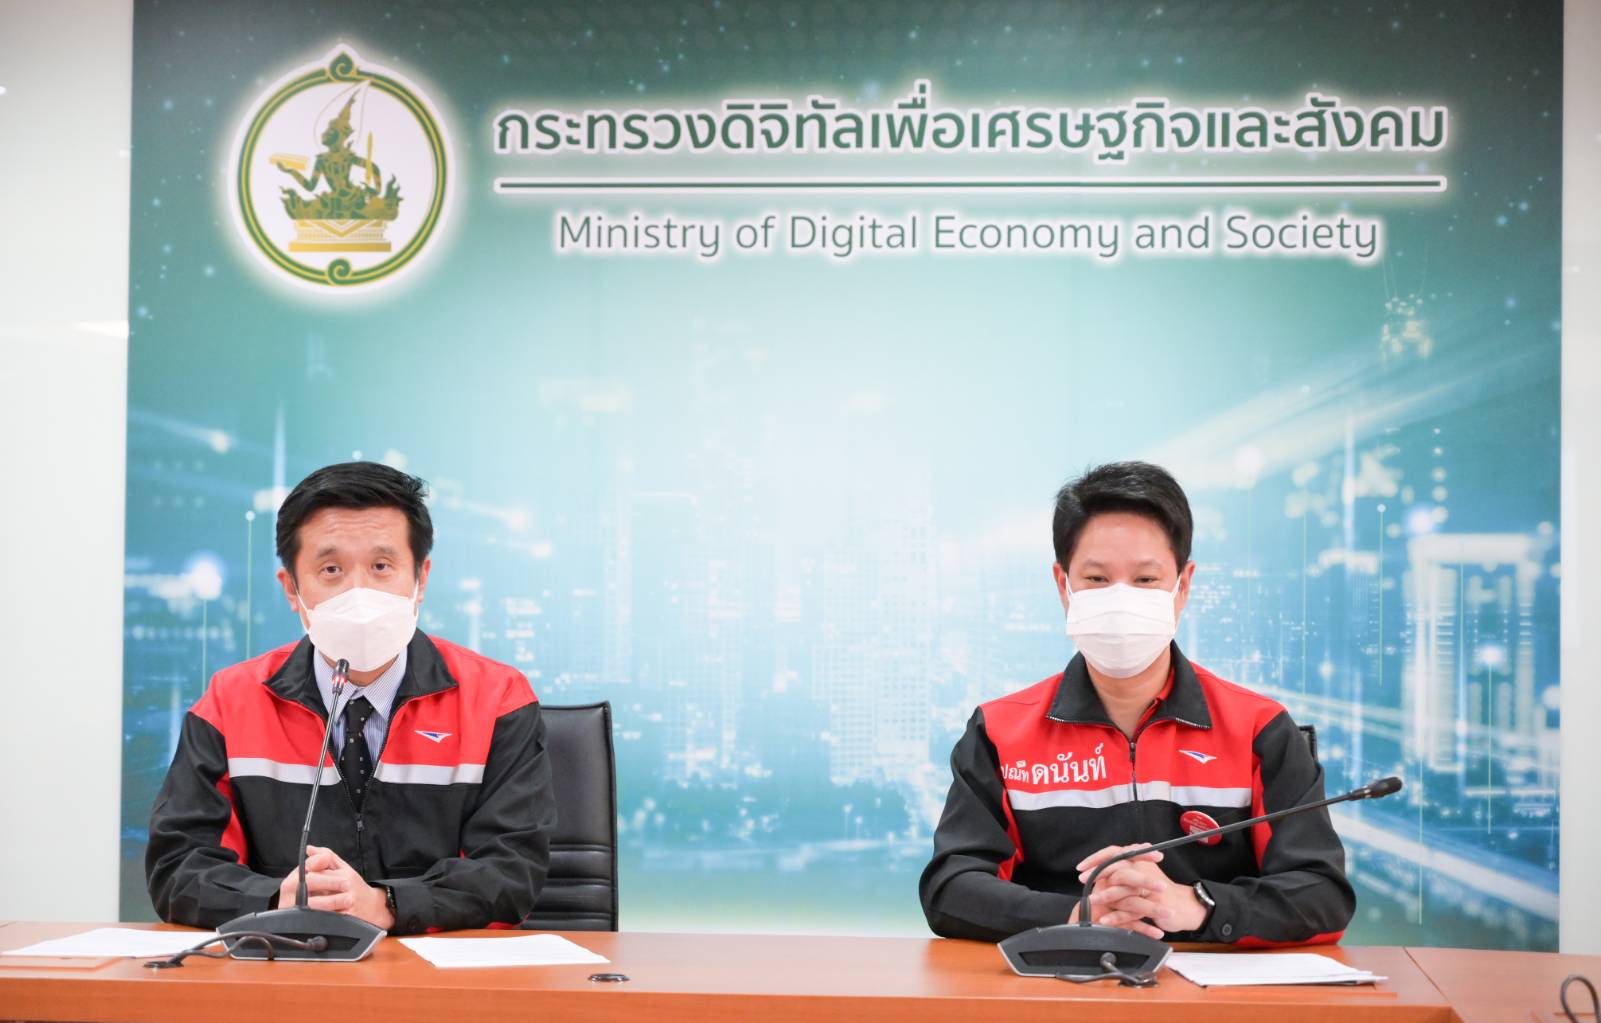 ไปรษณีย์ไทย ลุยให้บริการเพื่อคนไทย  สนับสนุนเศรษฐกิจ สังคม สาธารณสุข ให้เดินหน้าต่อในภาวะวิกฤต COVID-19